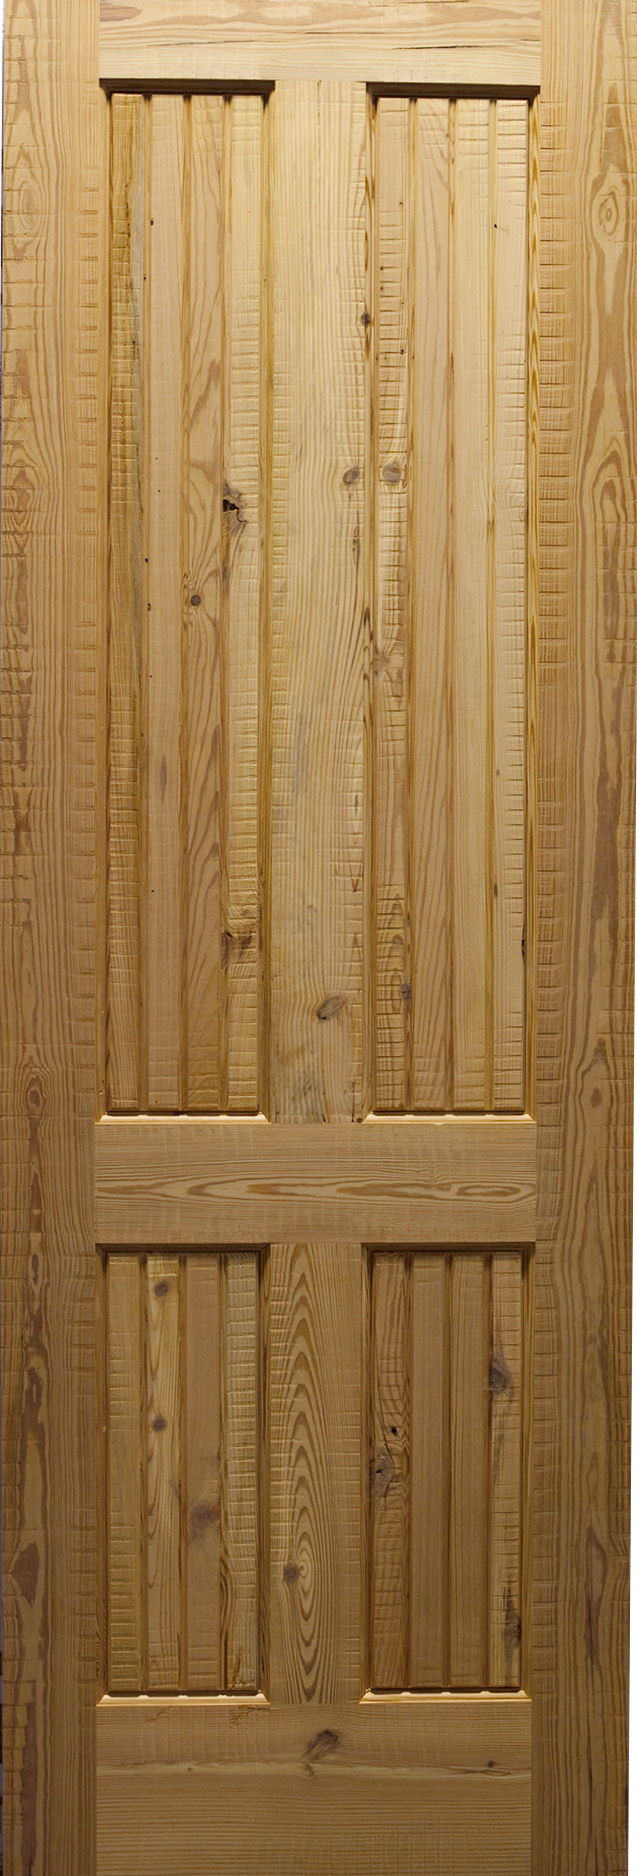 Rustic Interior Doors Country Wood Doors Homestead Doors Inc